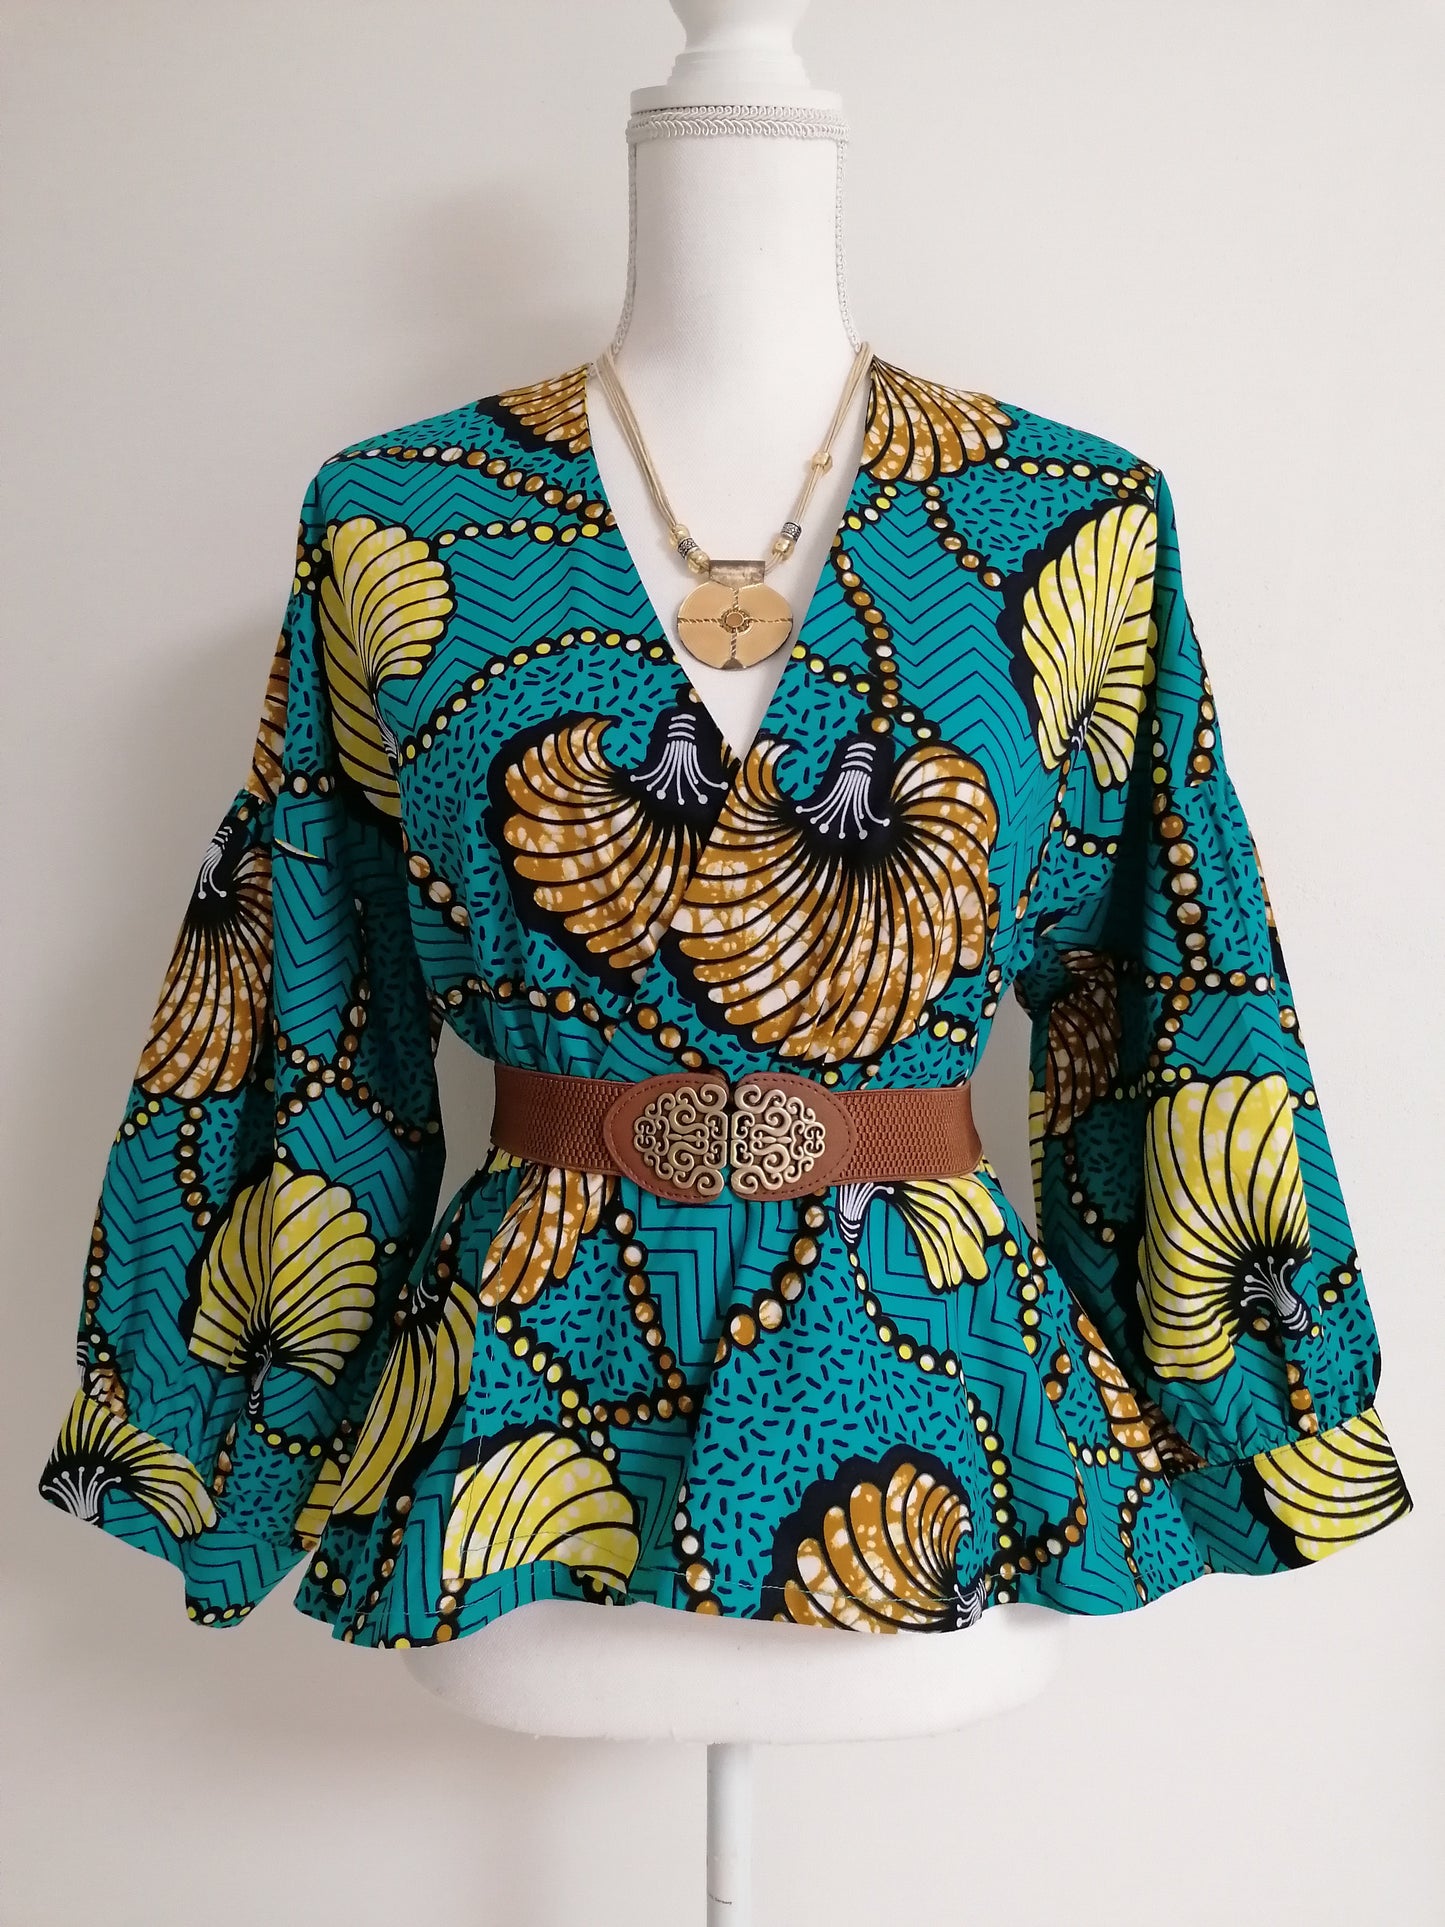 Africká halenka/blouse/ tyrkysová